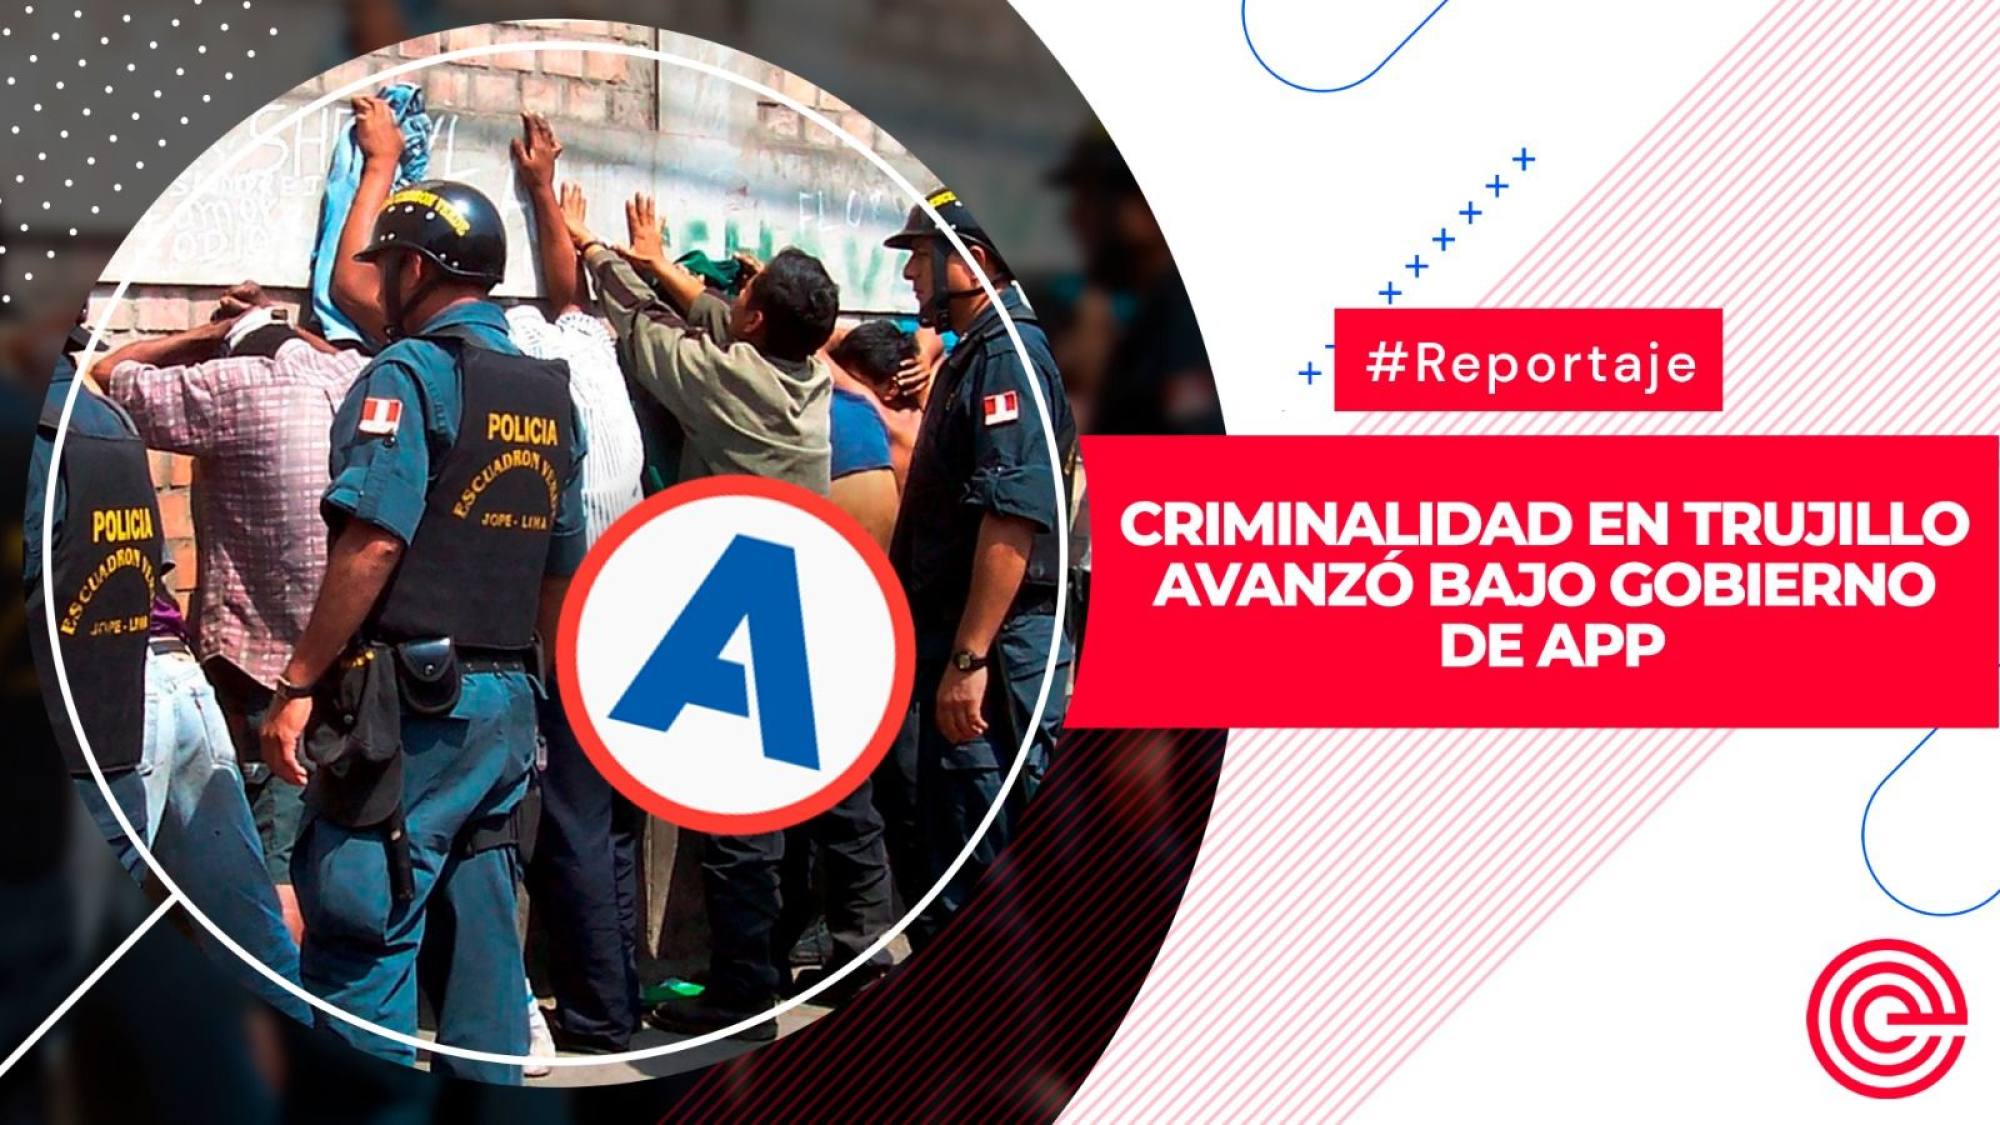 Criminalidad en Trujillo avanzó bajo gobierno de APP, Epicentro TV